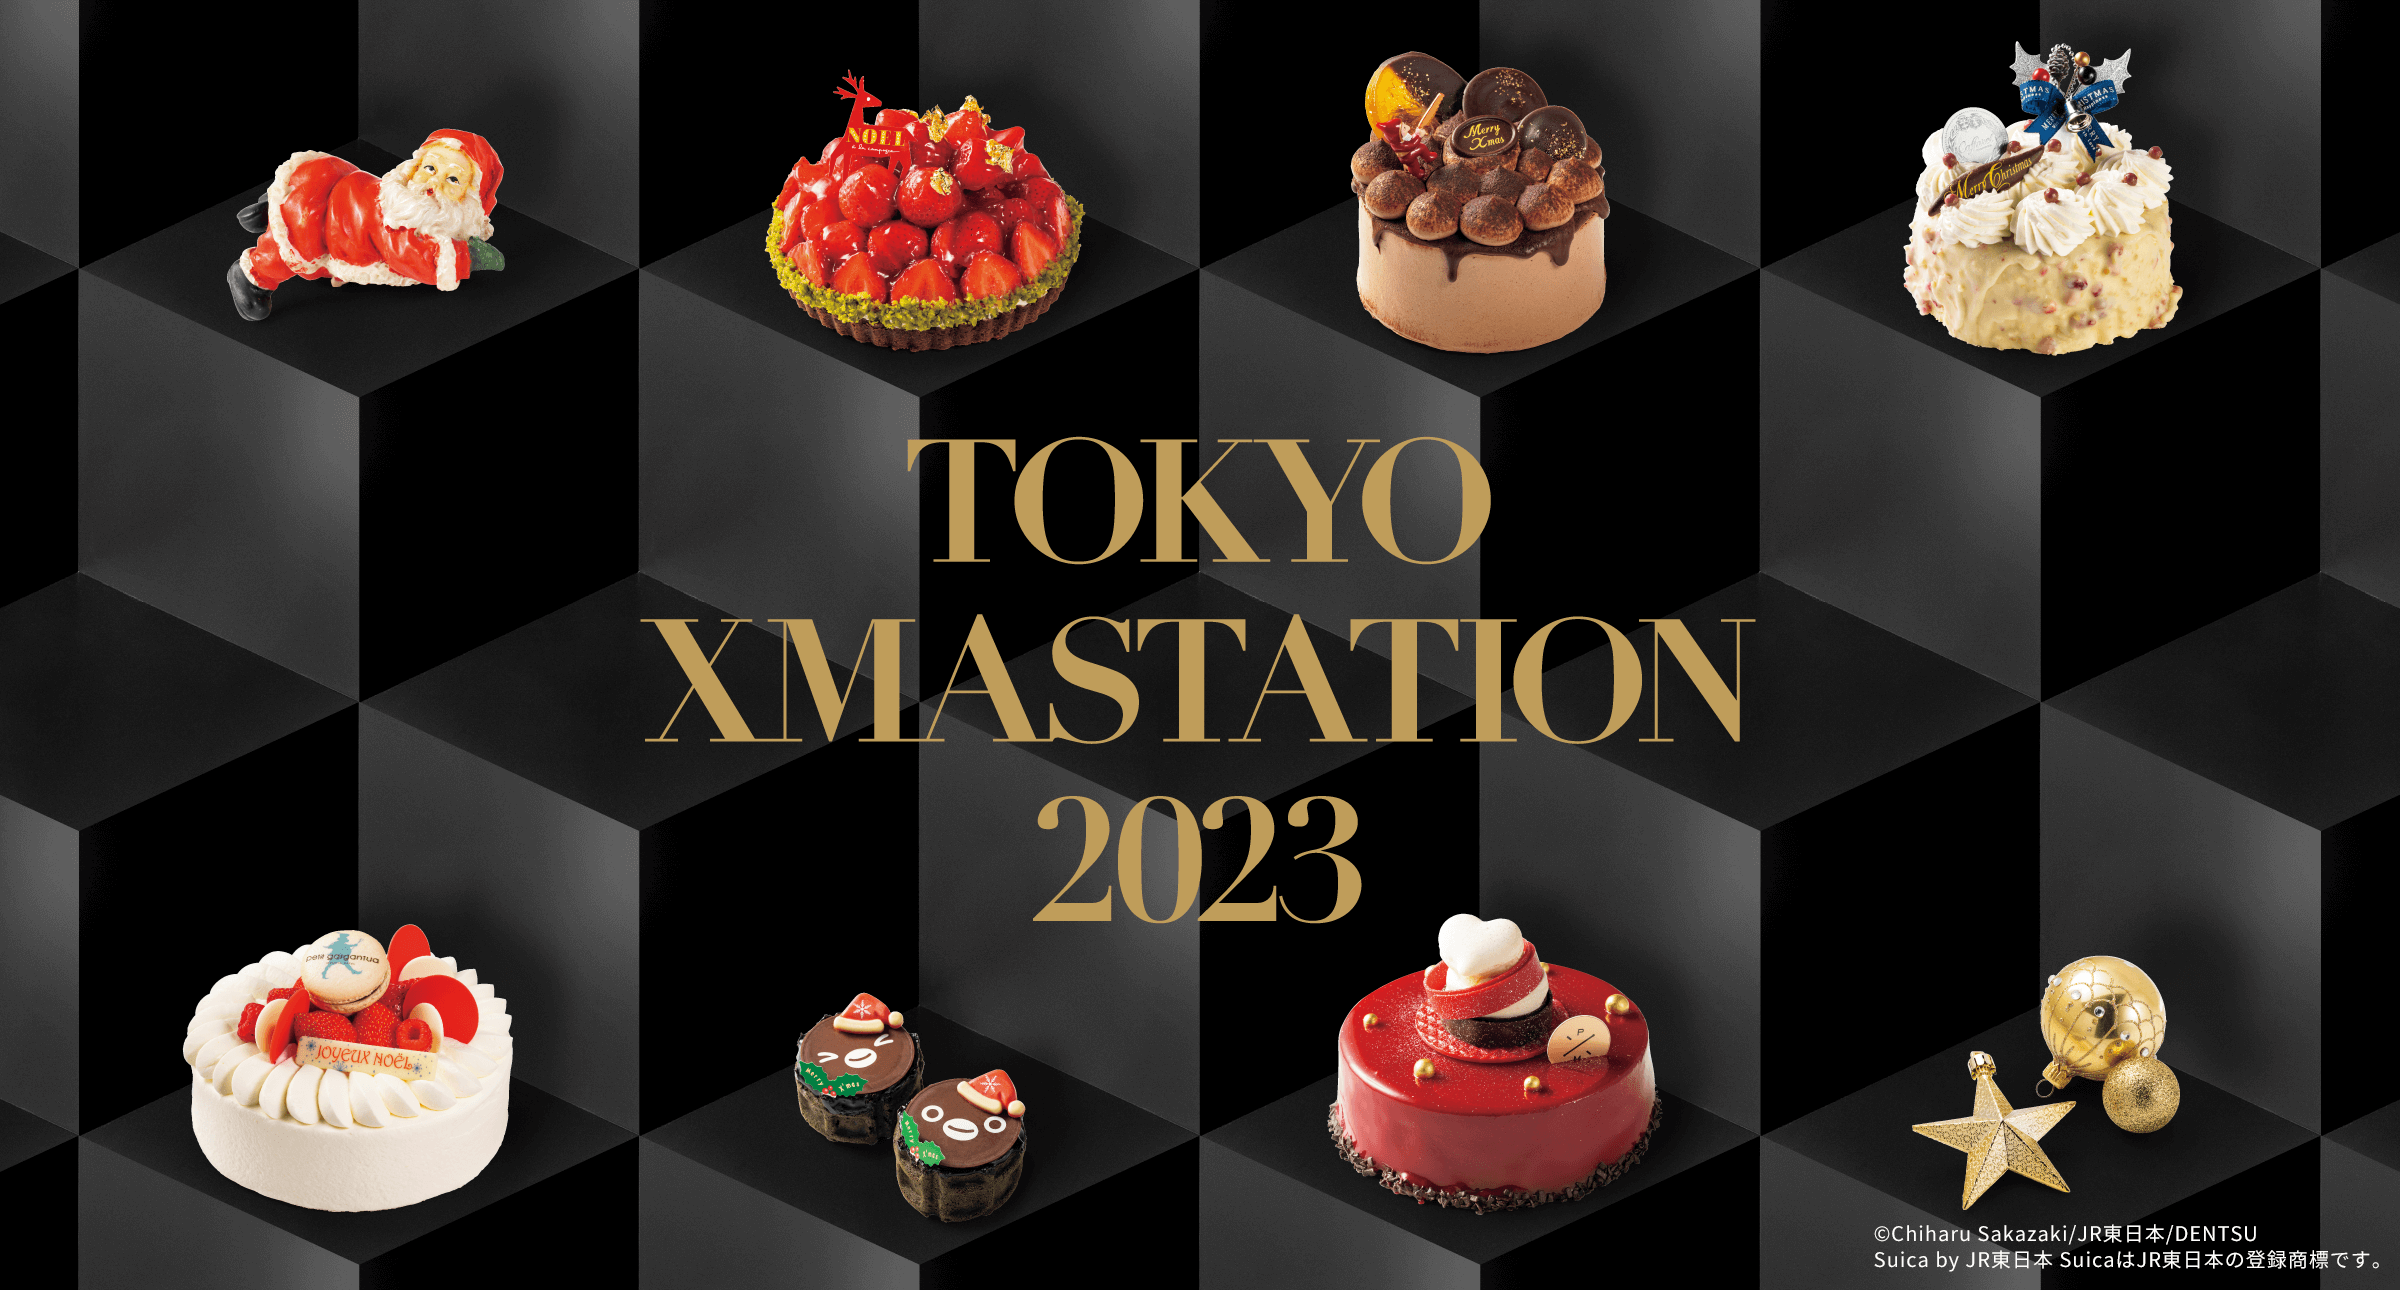 TOKYO XMASTATION 2023